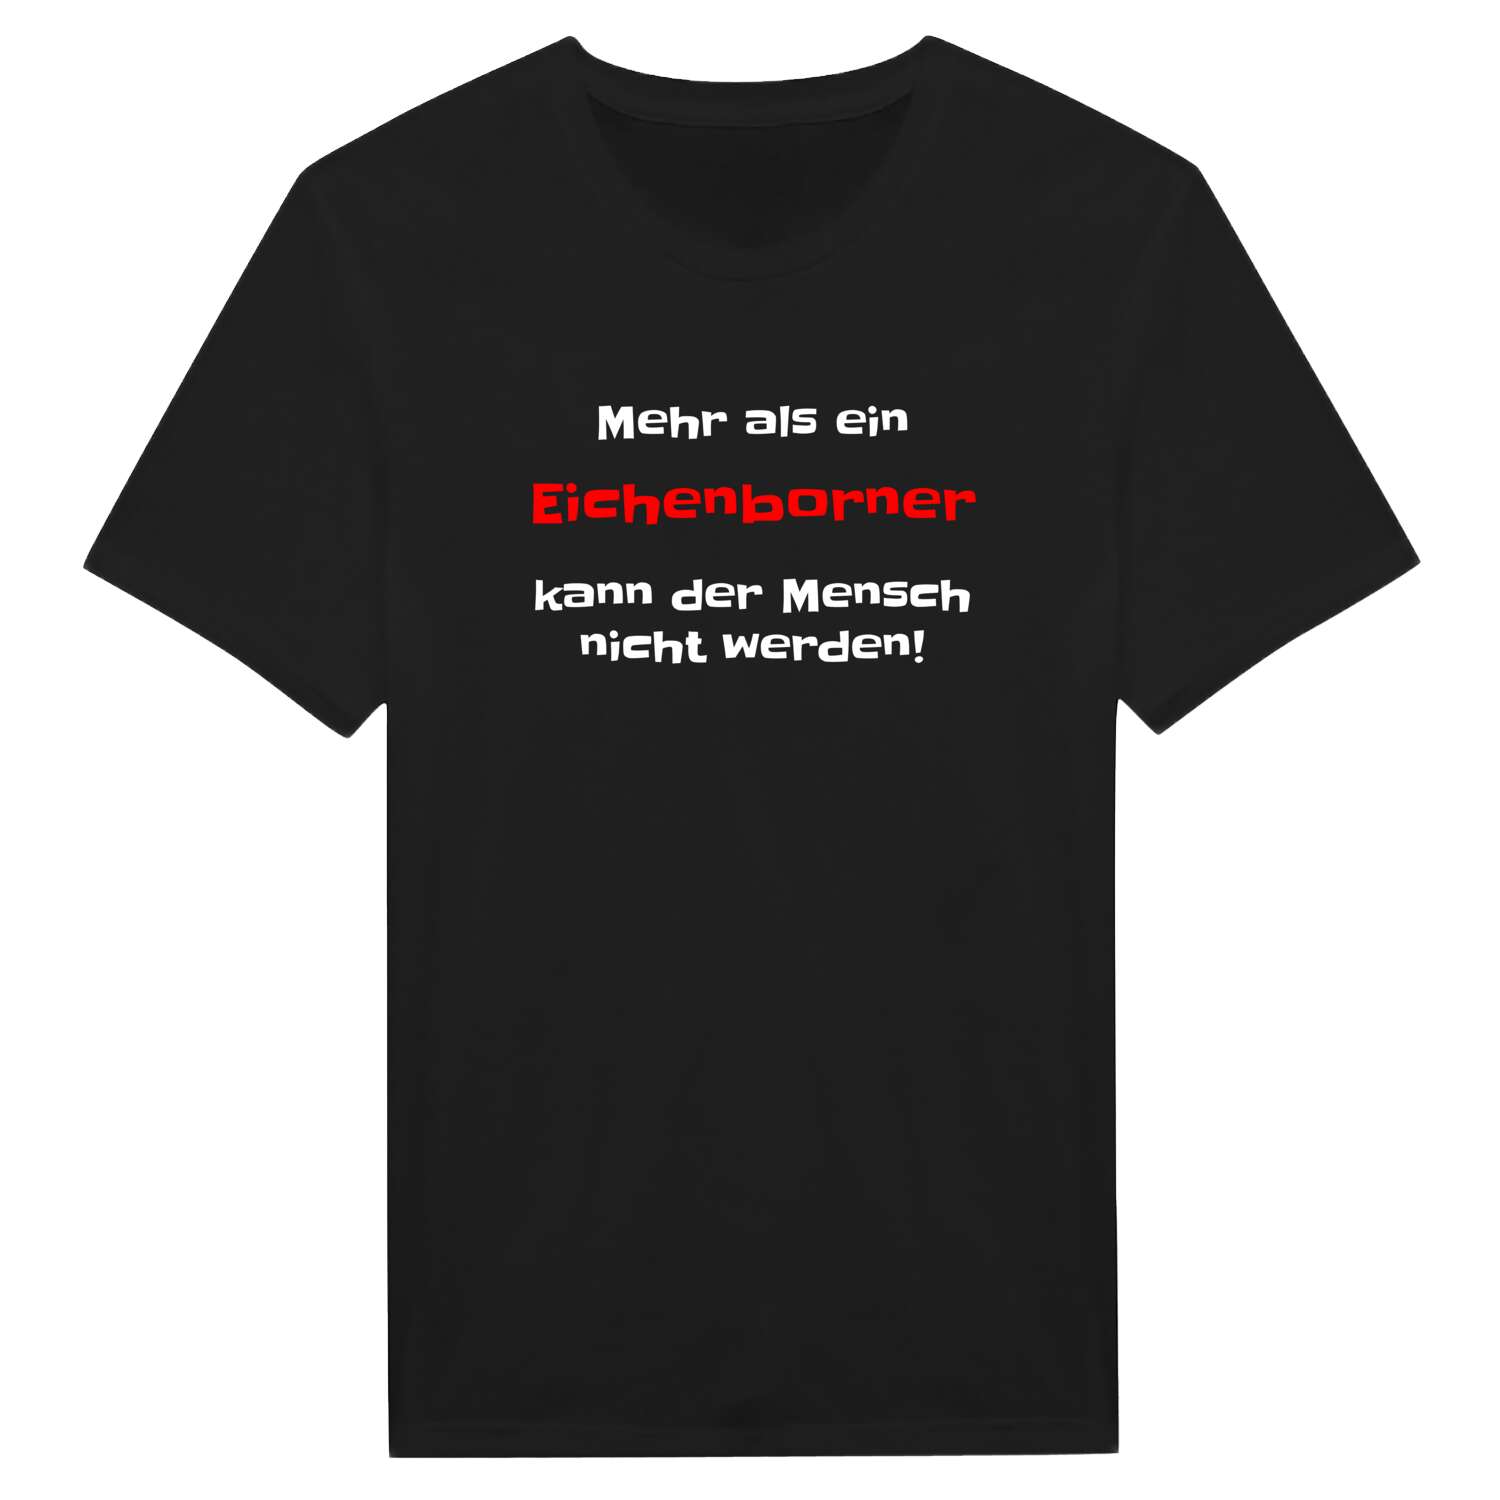 Eichenborn T-Shirt »Mehr als ein«